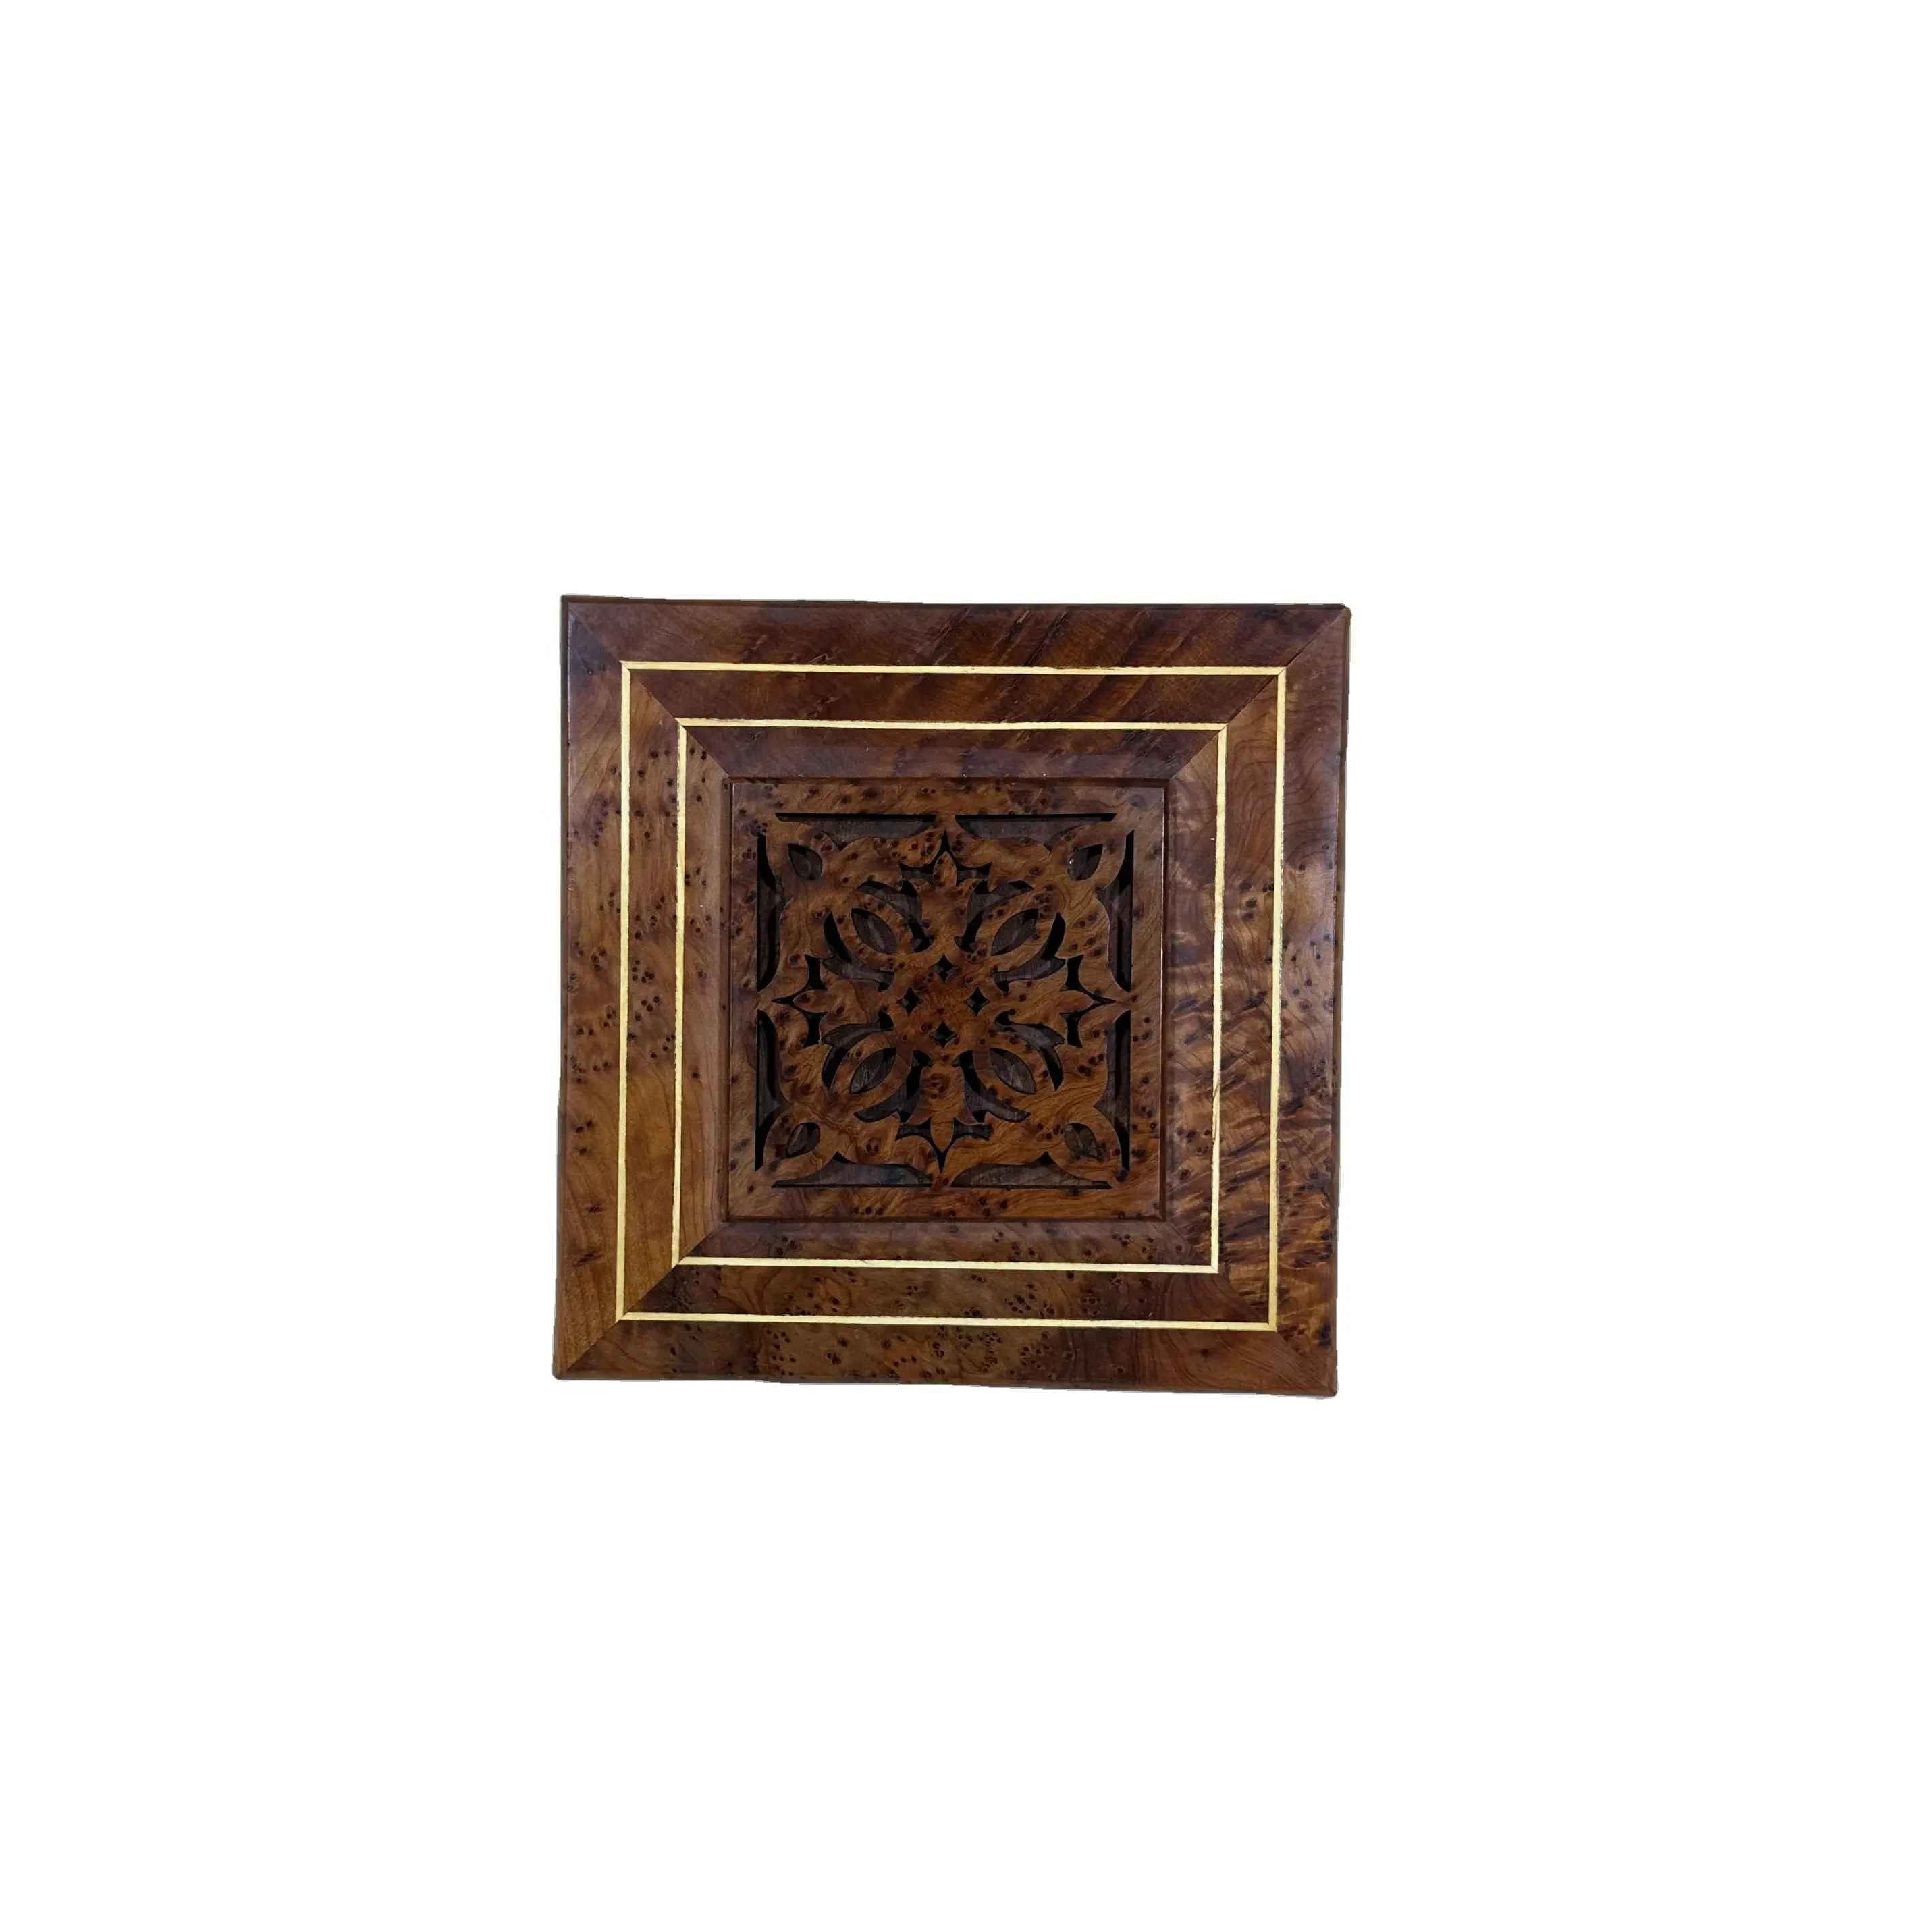 Caixa secreta com 4 lugares para joias marroquinas, artesanal Thuya, decoração em madeira, caixa de joias Thuya